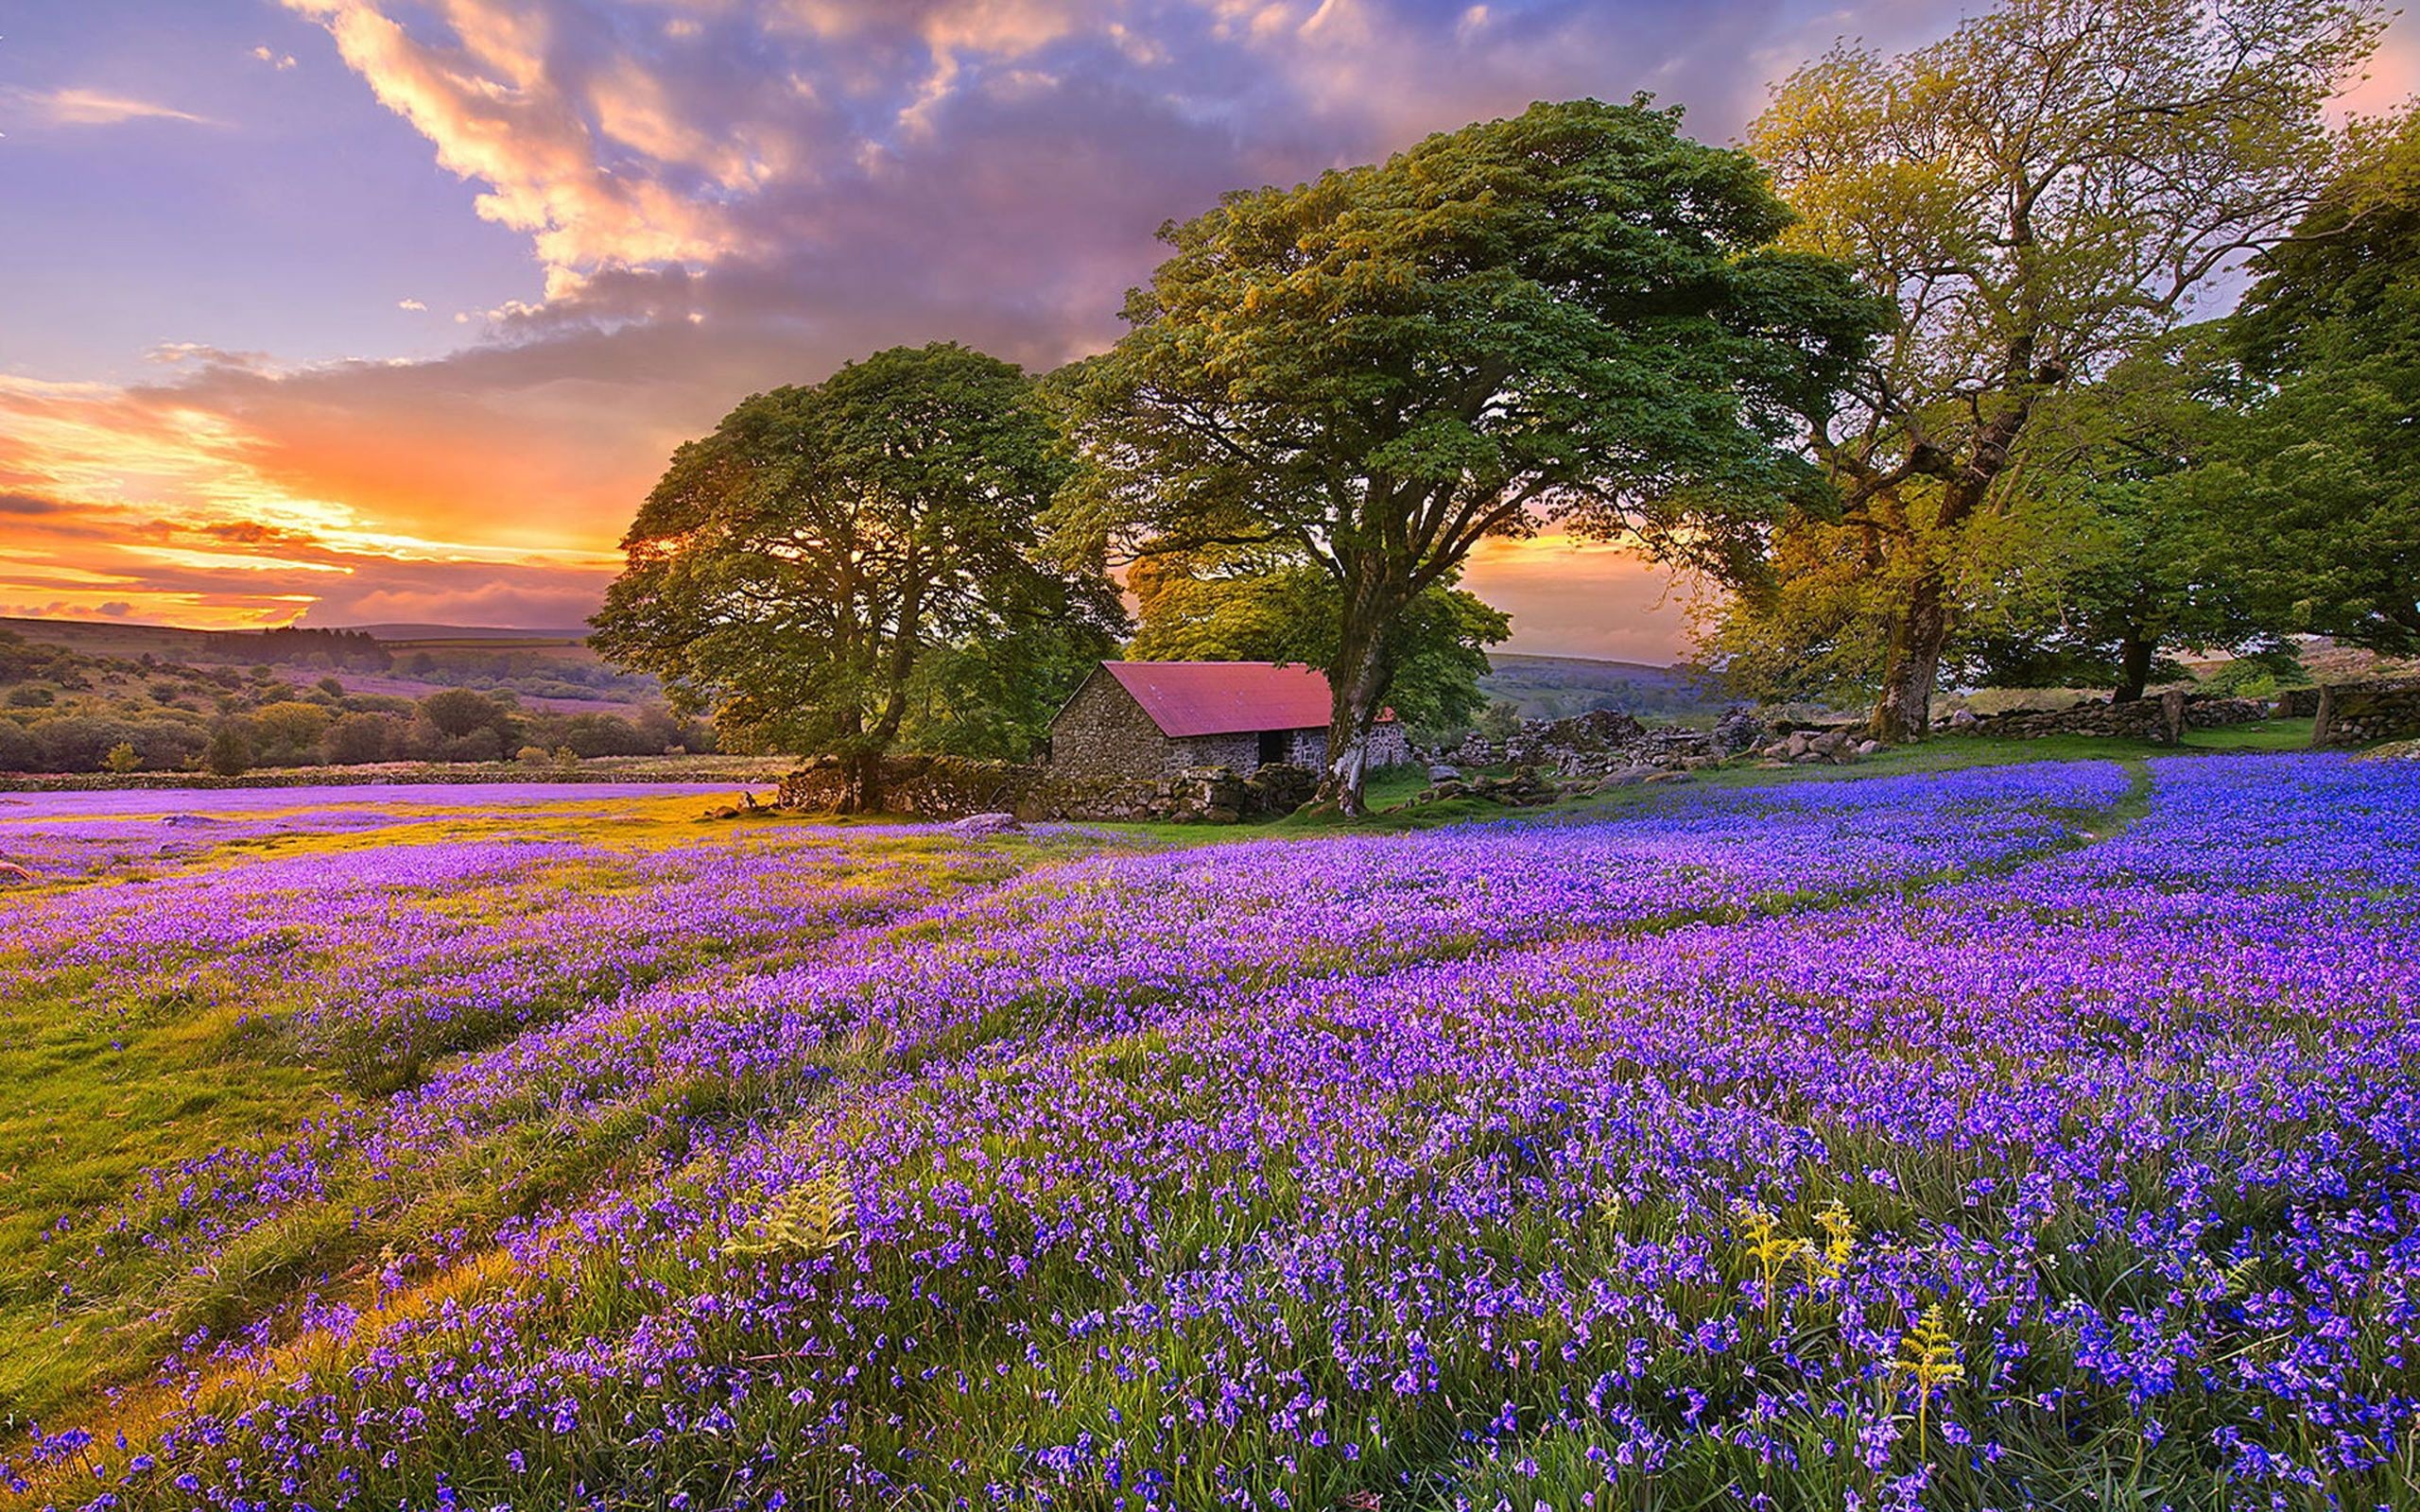 Flower Field: Grassland, Sunset, Natural landscape, Summer trees. 2560x1600 HD Wallpaper.